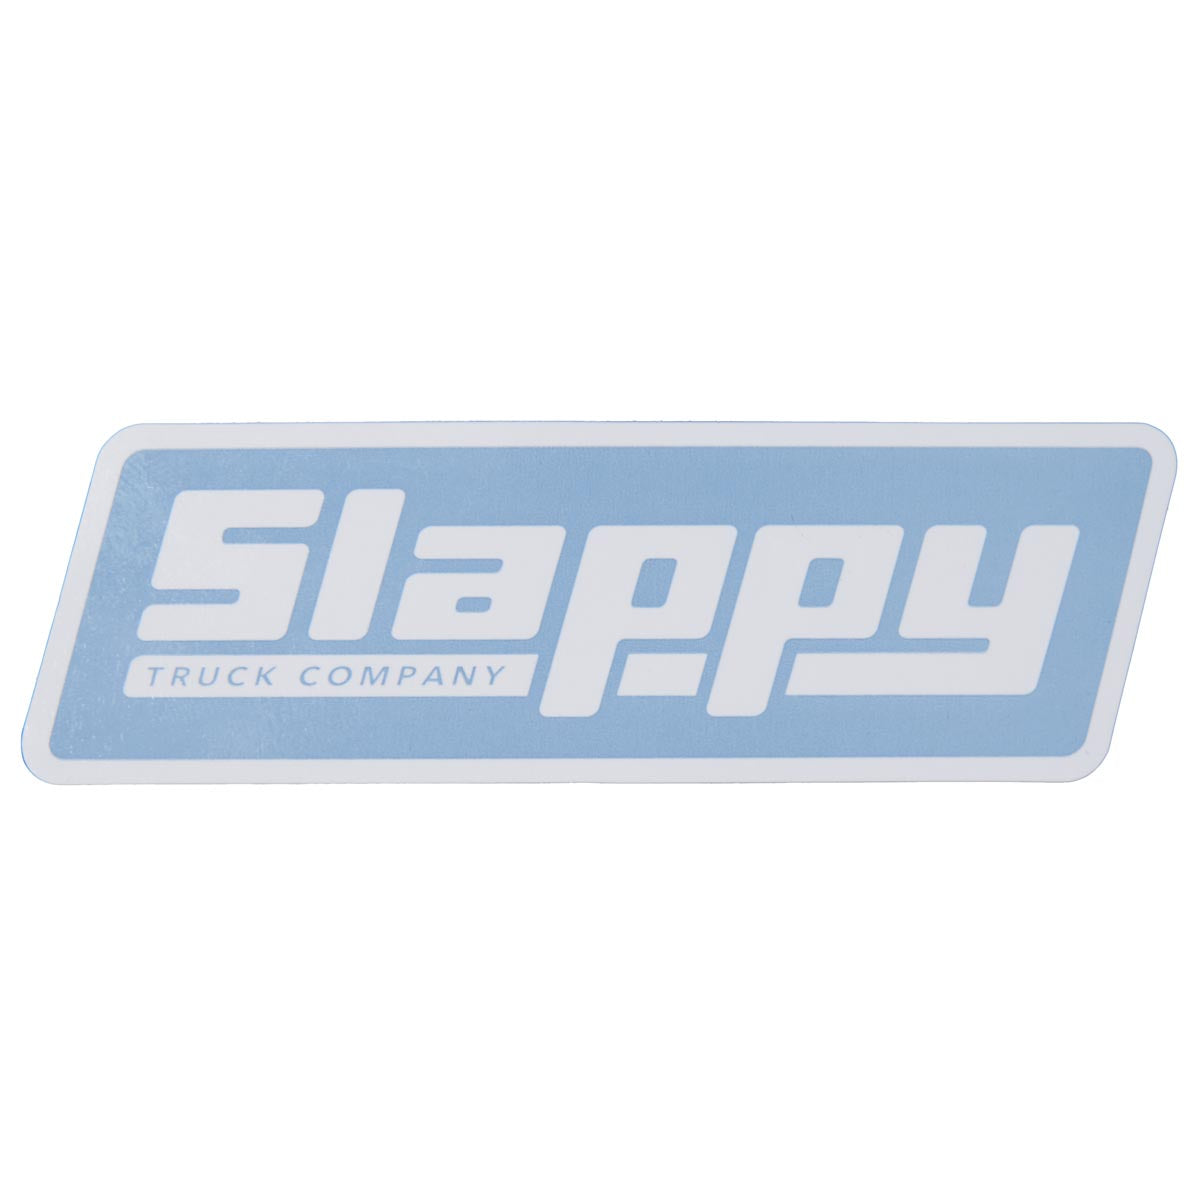 Slappy OG Logo Sticker - Blue/White image 1